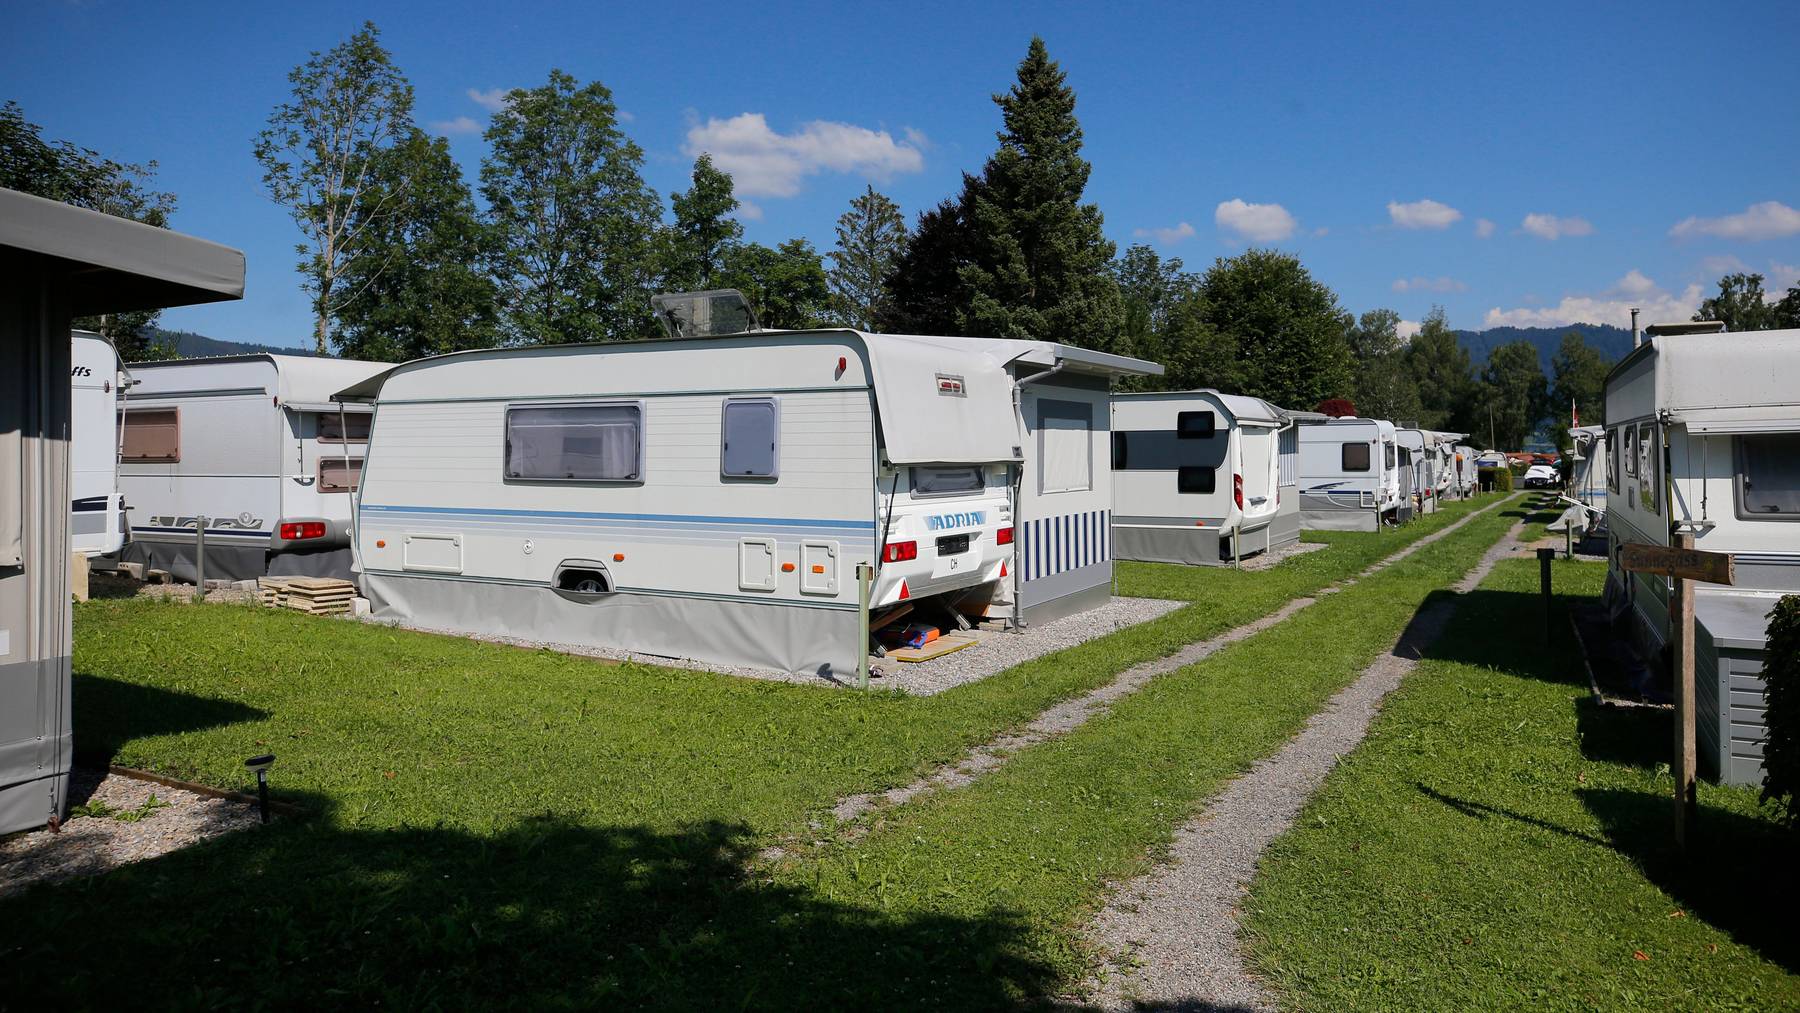 Campingplätze seien gleich zu behandeln wie Jugendherbergen oder Hotels, fordert der Verband Swisscamps.